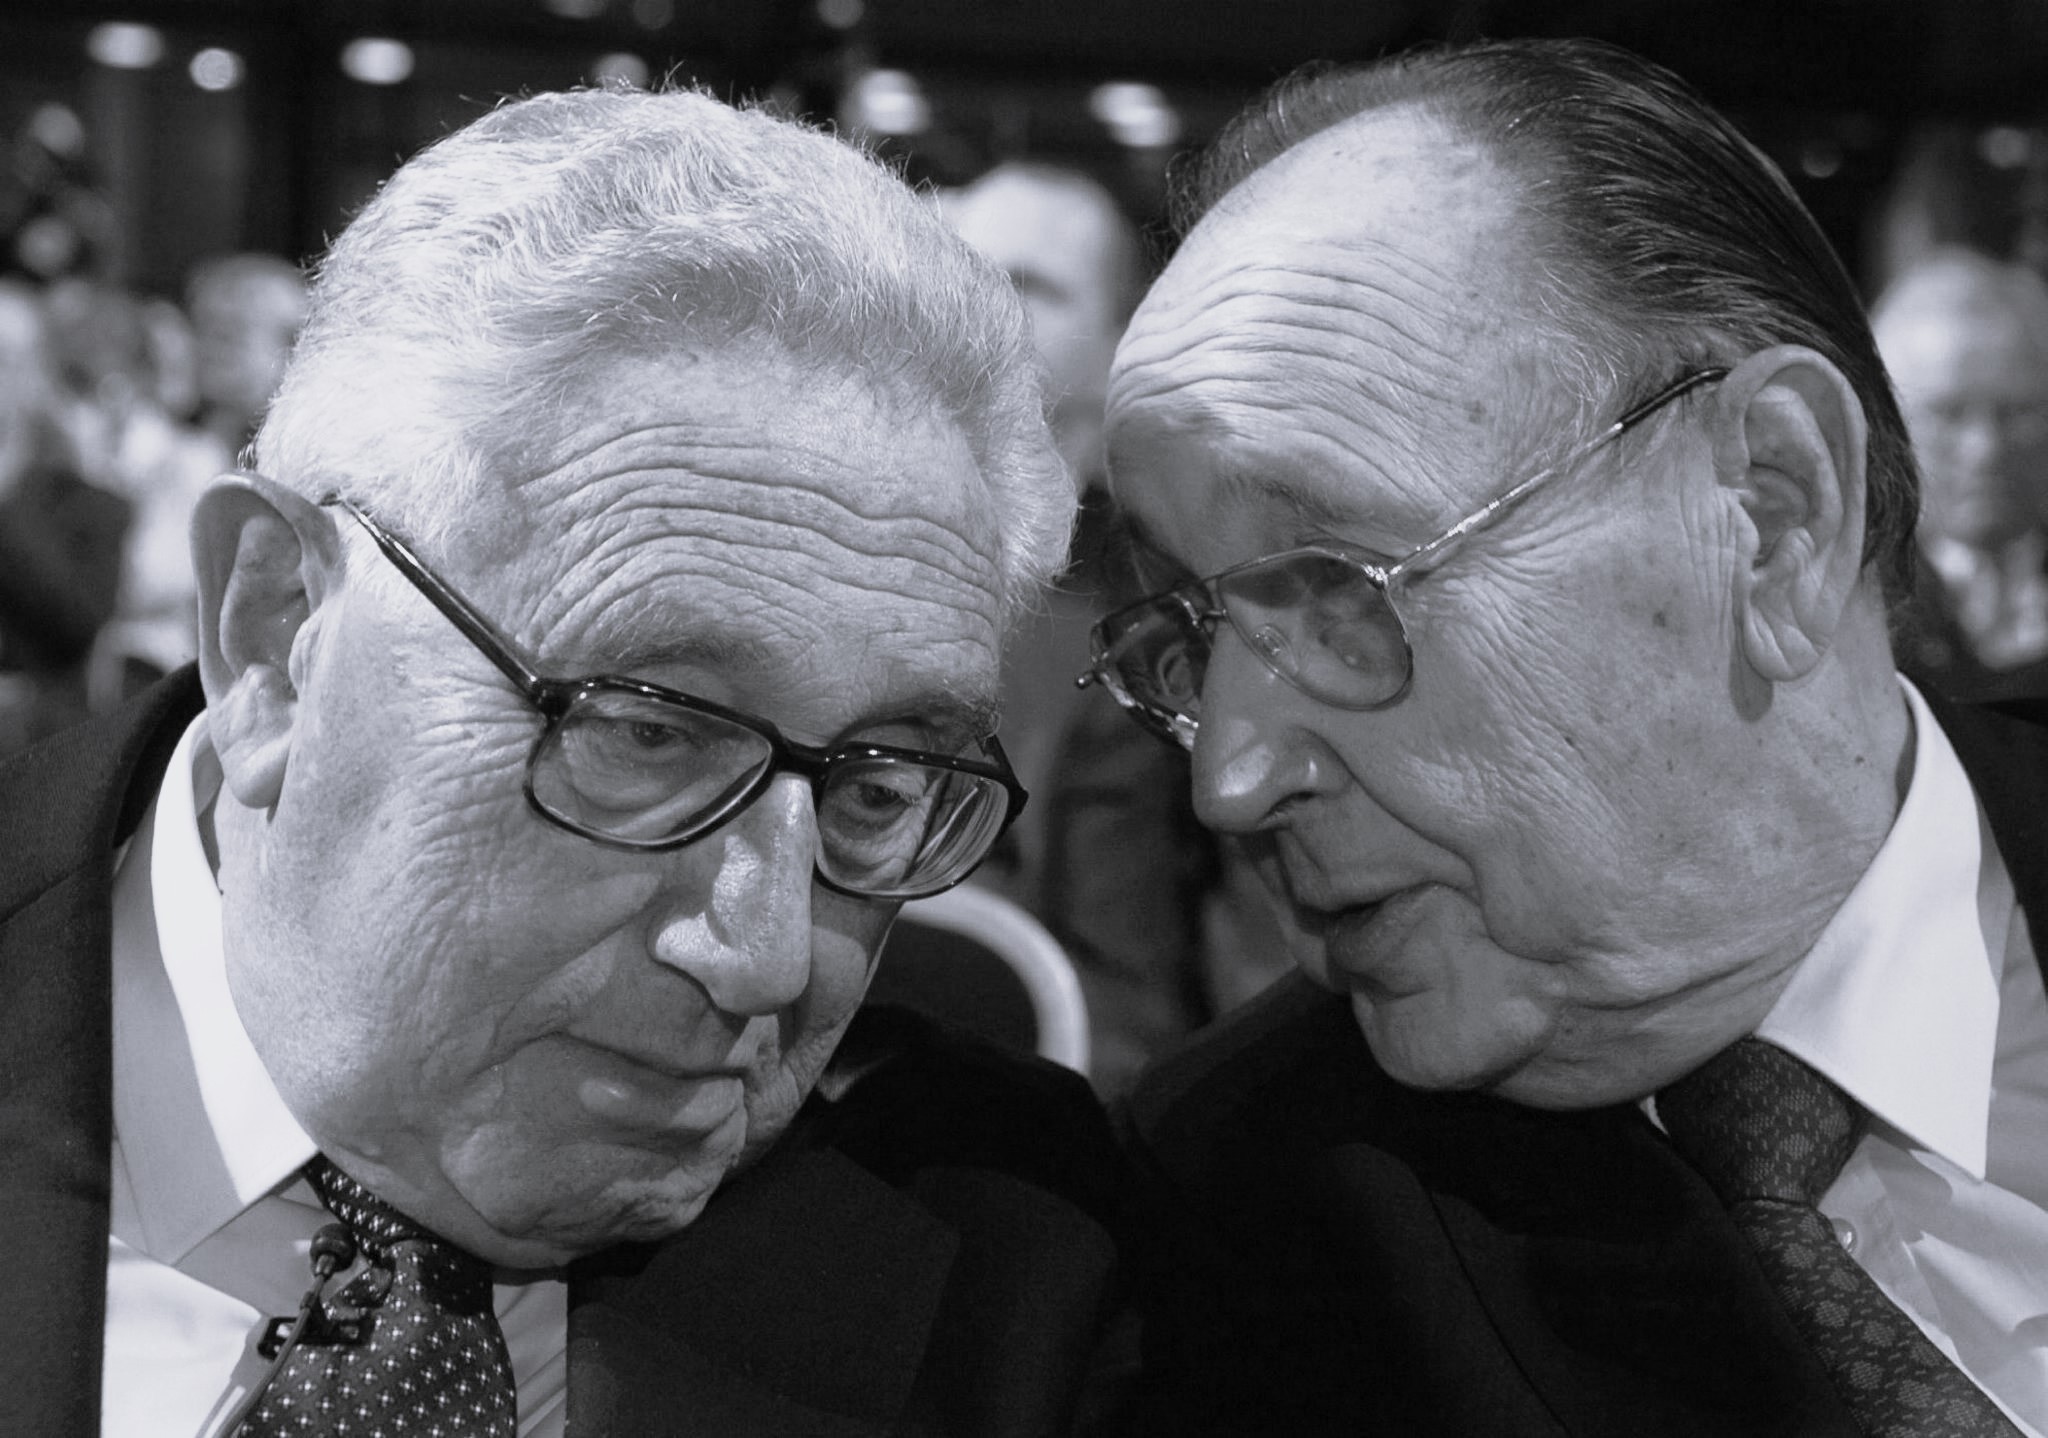 Der ehemalige US-Außenminister Henry Kissinger (L) und der ehemalige deutsche Außenminister Hans-Dietrich Genscher